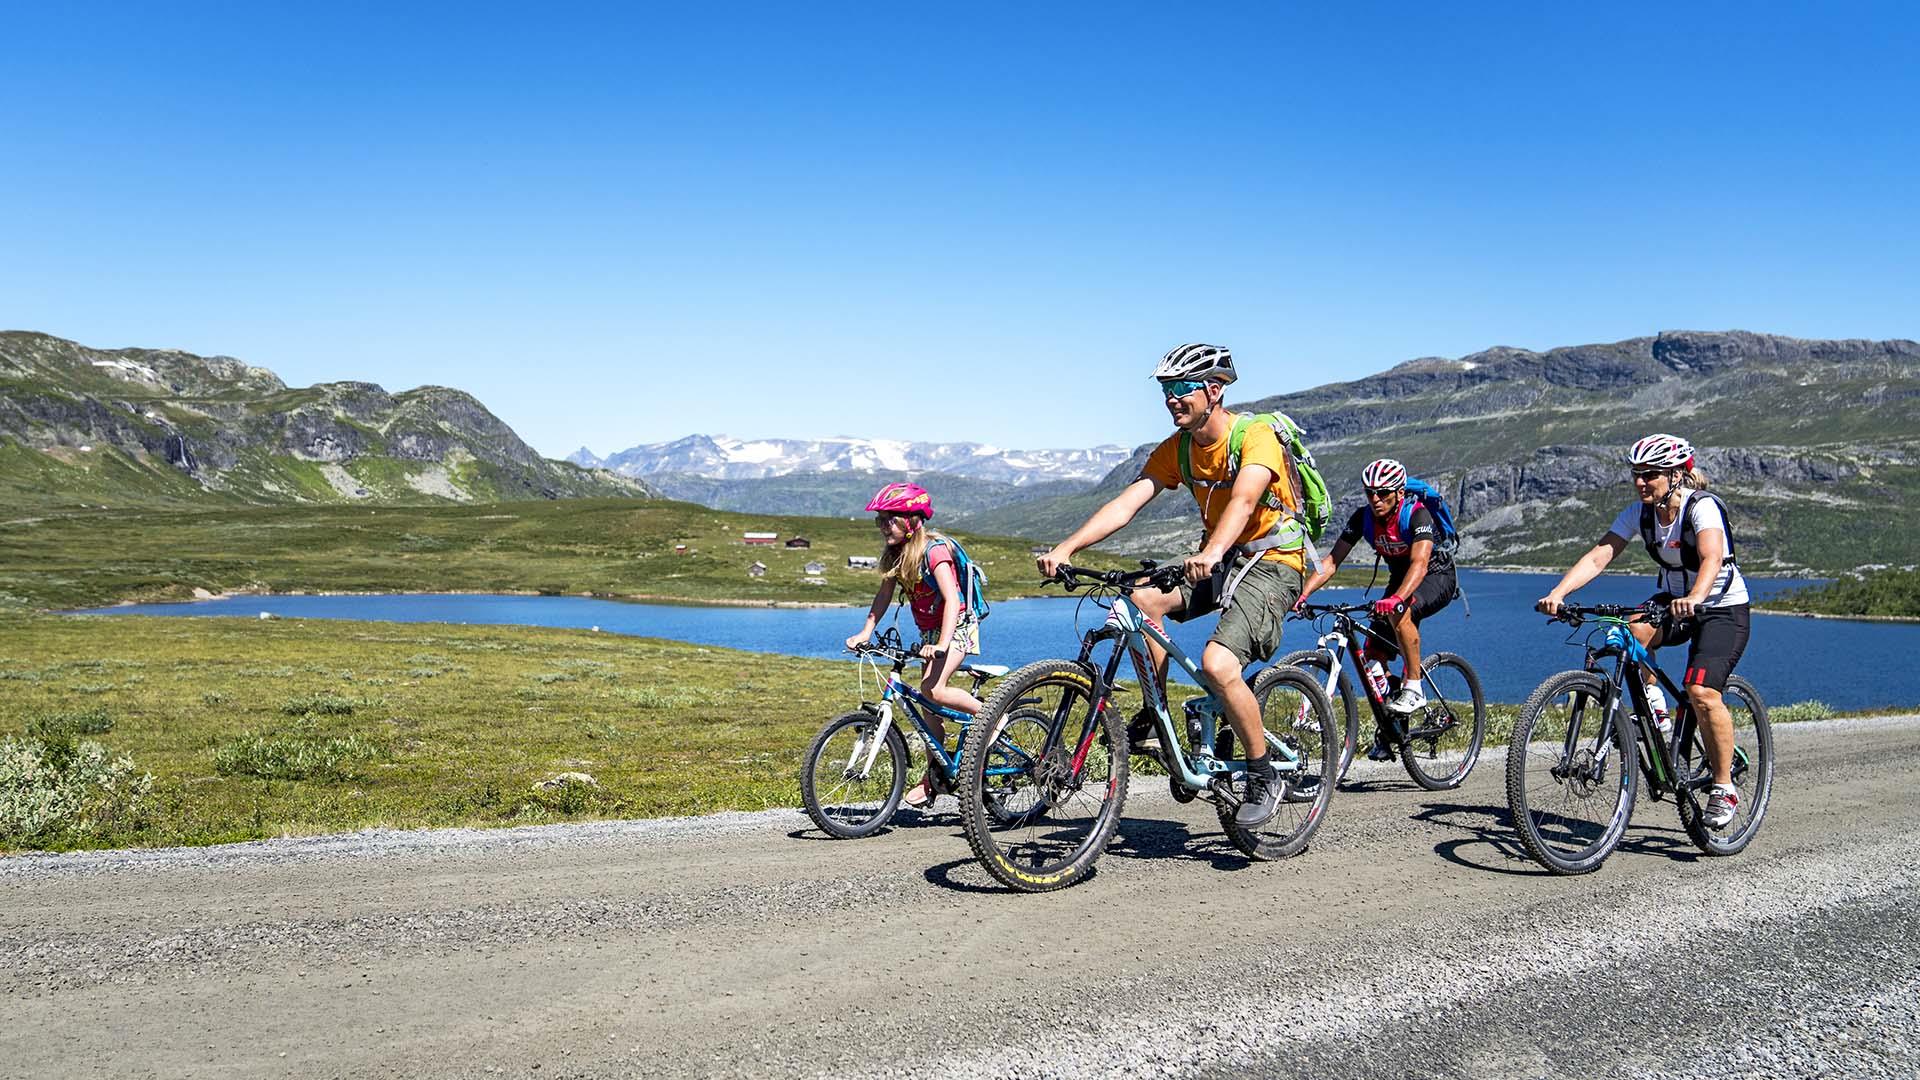 Eine Familie auf Mountainbikes radelt an einem wolkenlosen Sommertag Bergsee vorbei. In der Ferne hohe, noch schneebedeckte Berge.